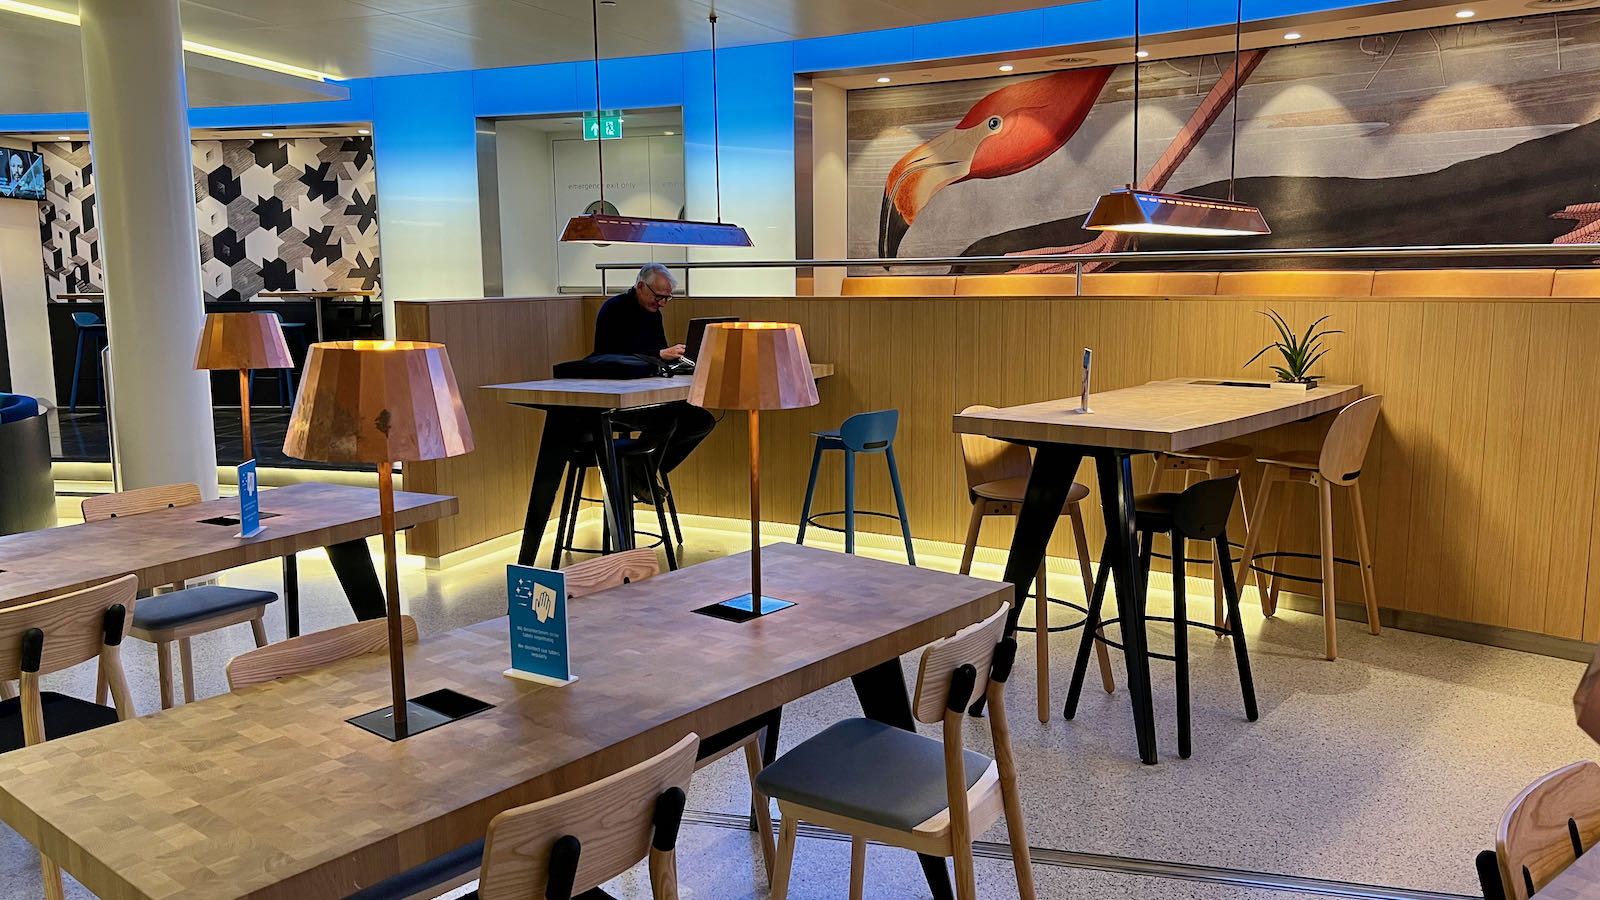 KLM Crown Lounge dining seating